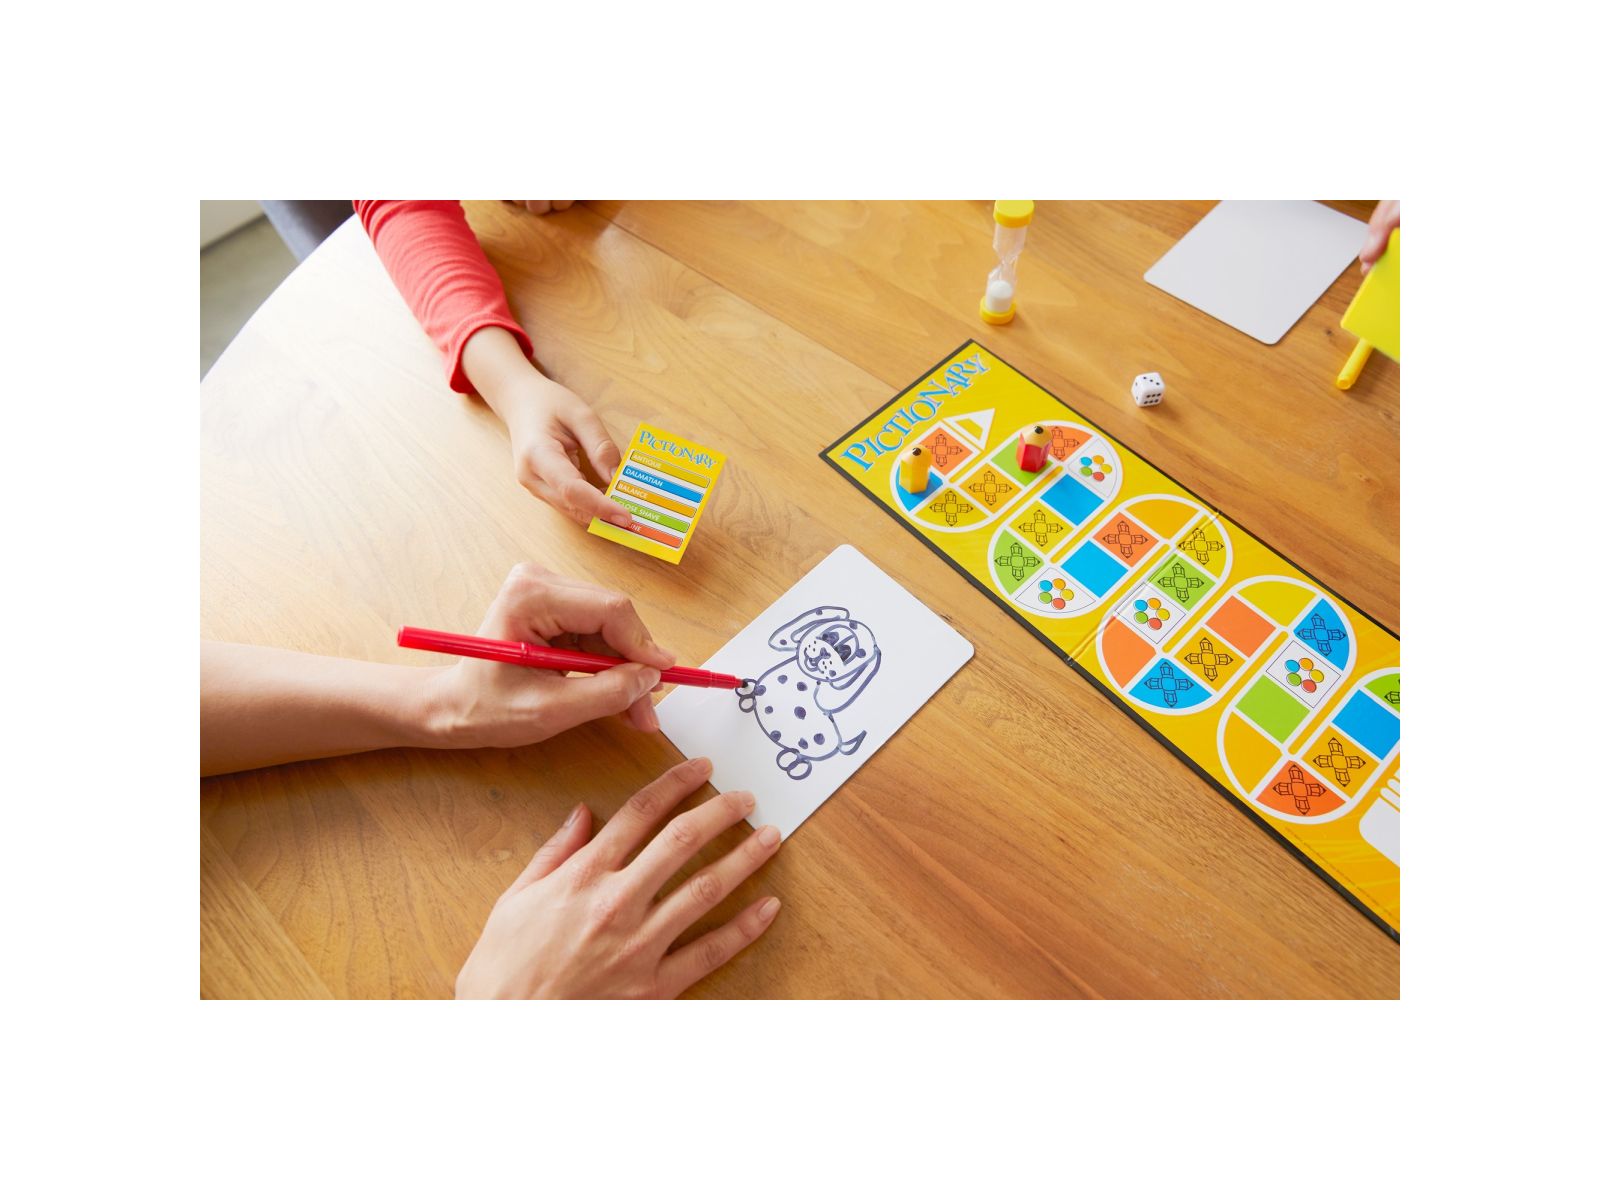 Mattel games, pictionary, gioco in scatola per famiglie, lingua italiana, 8+anni - MATTEL GAMES